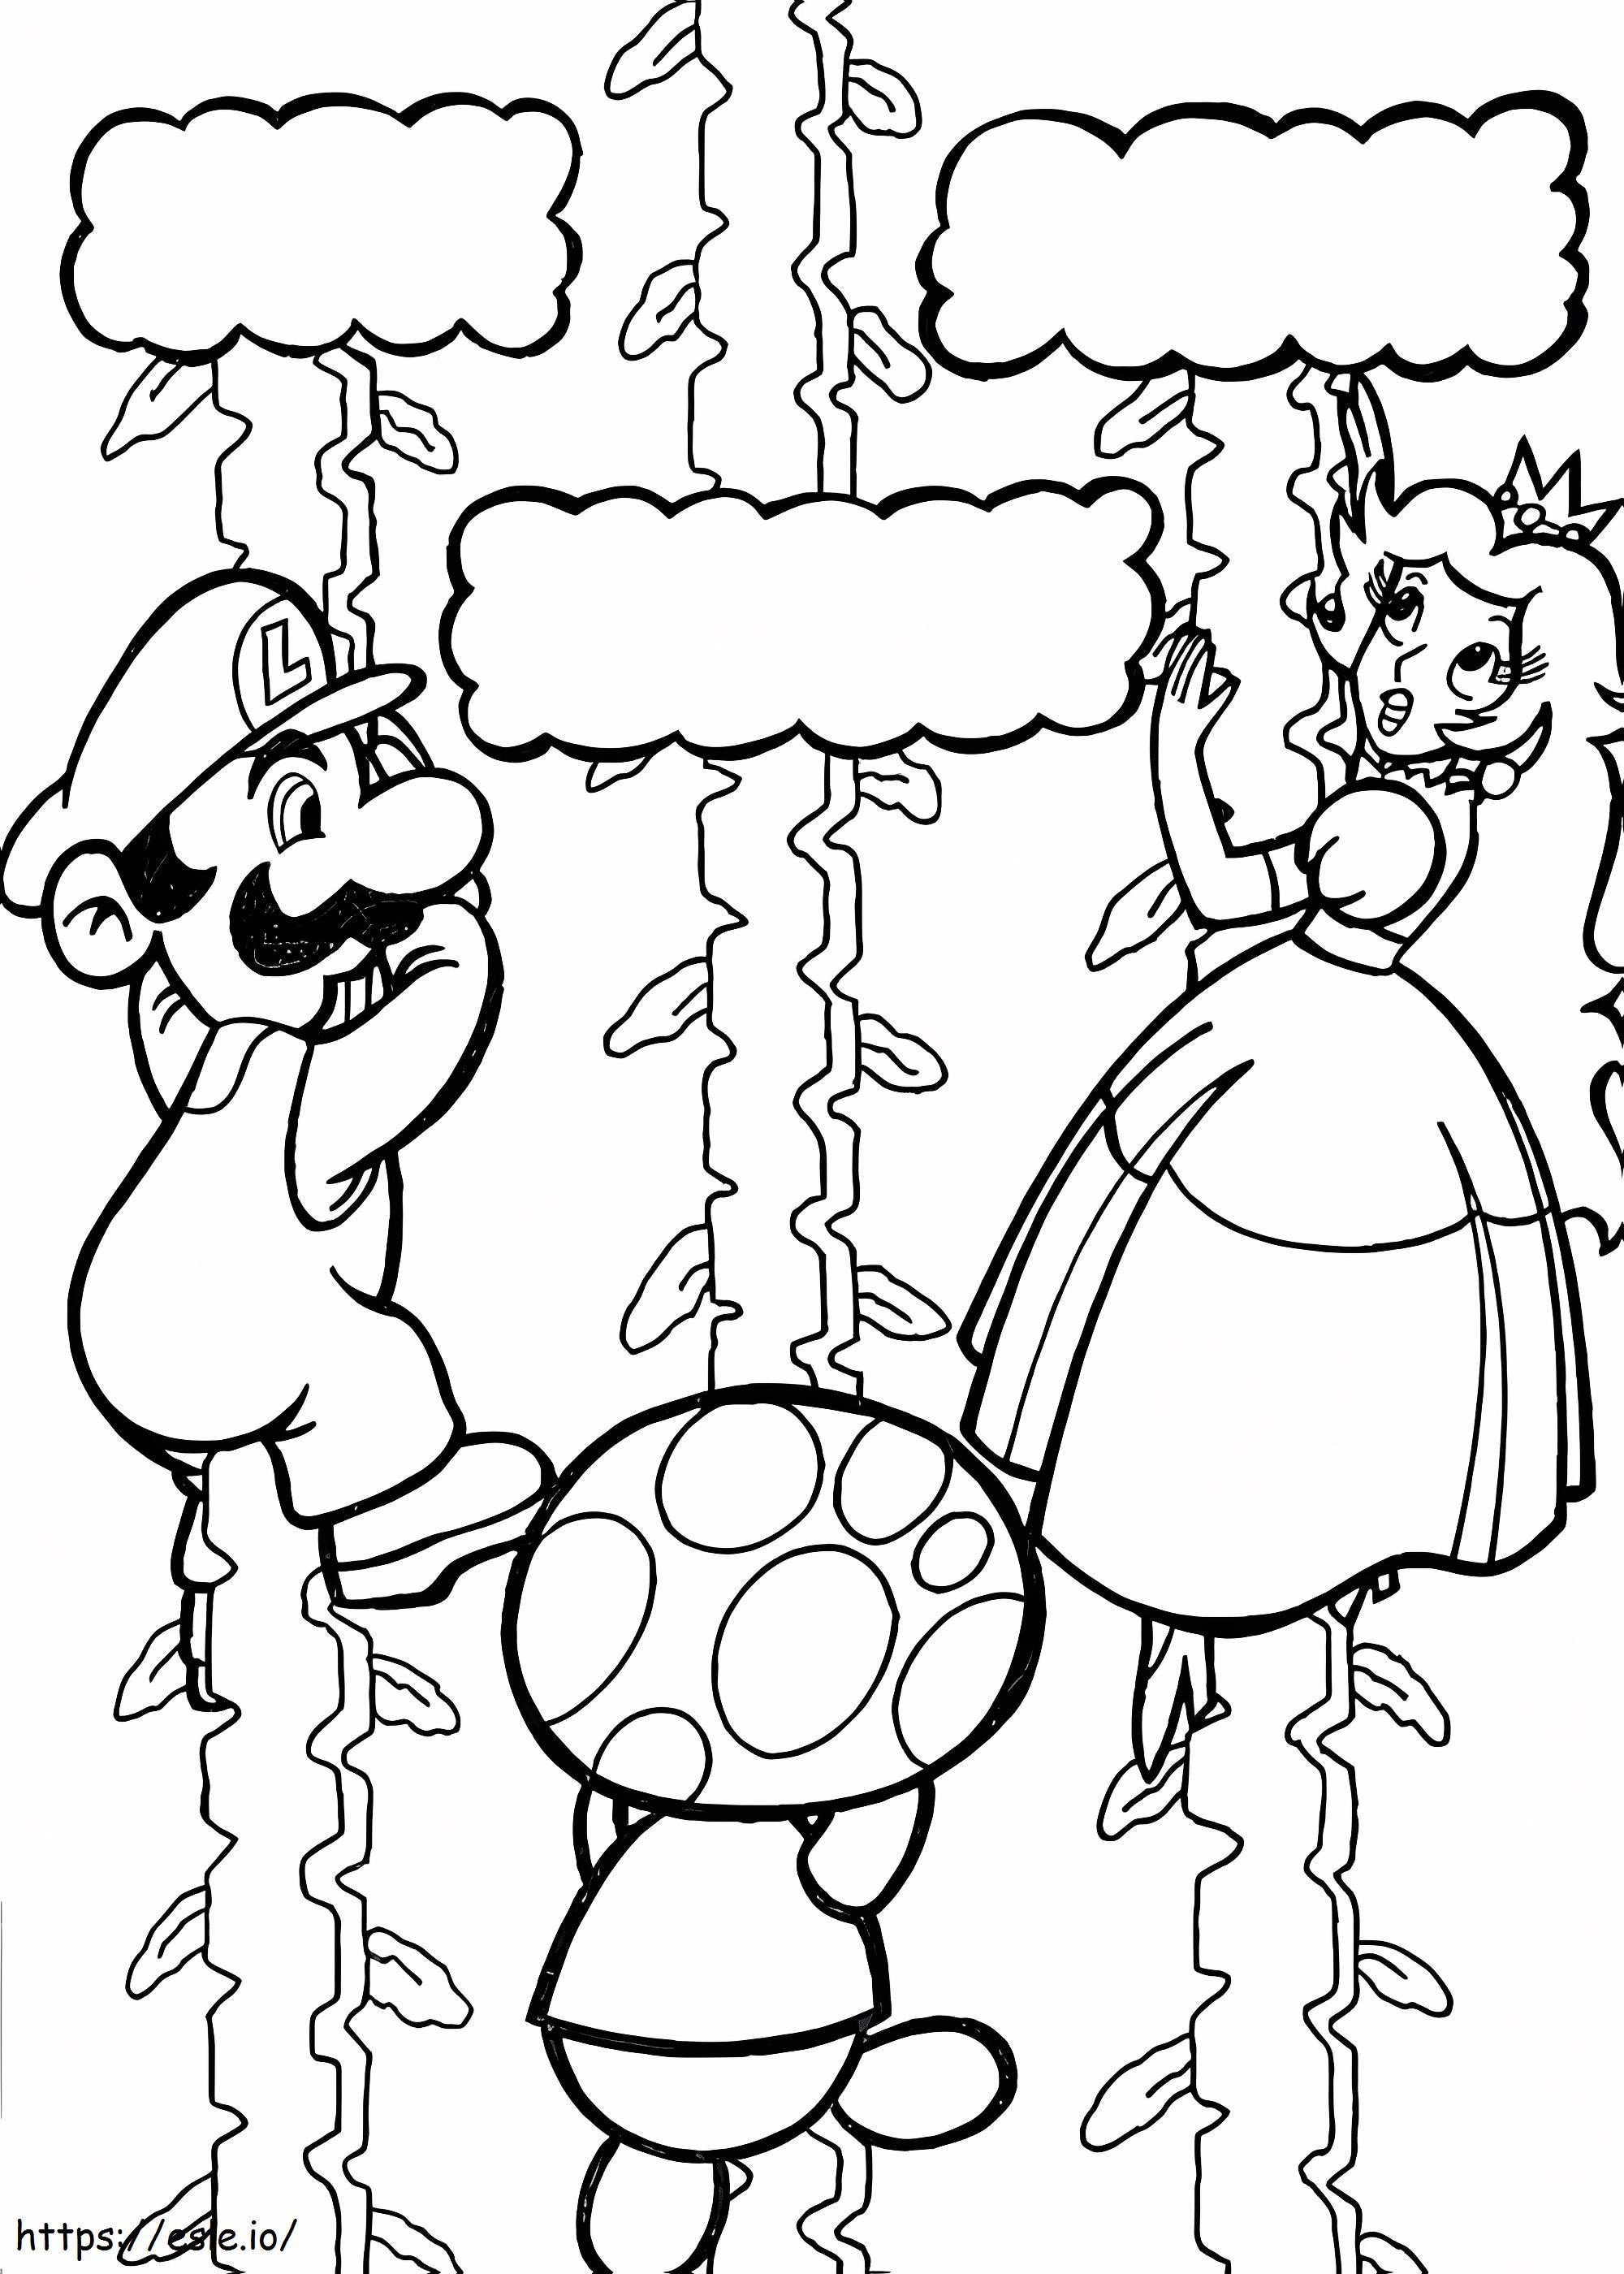 Mario Prensesi Kurtarıyor boyama